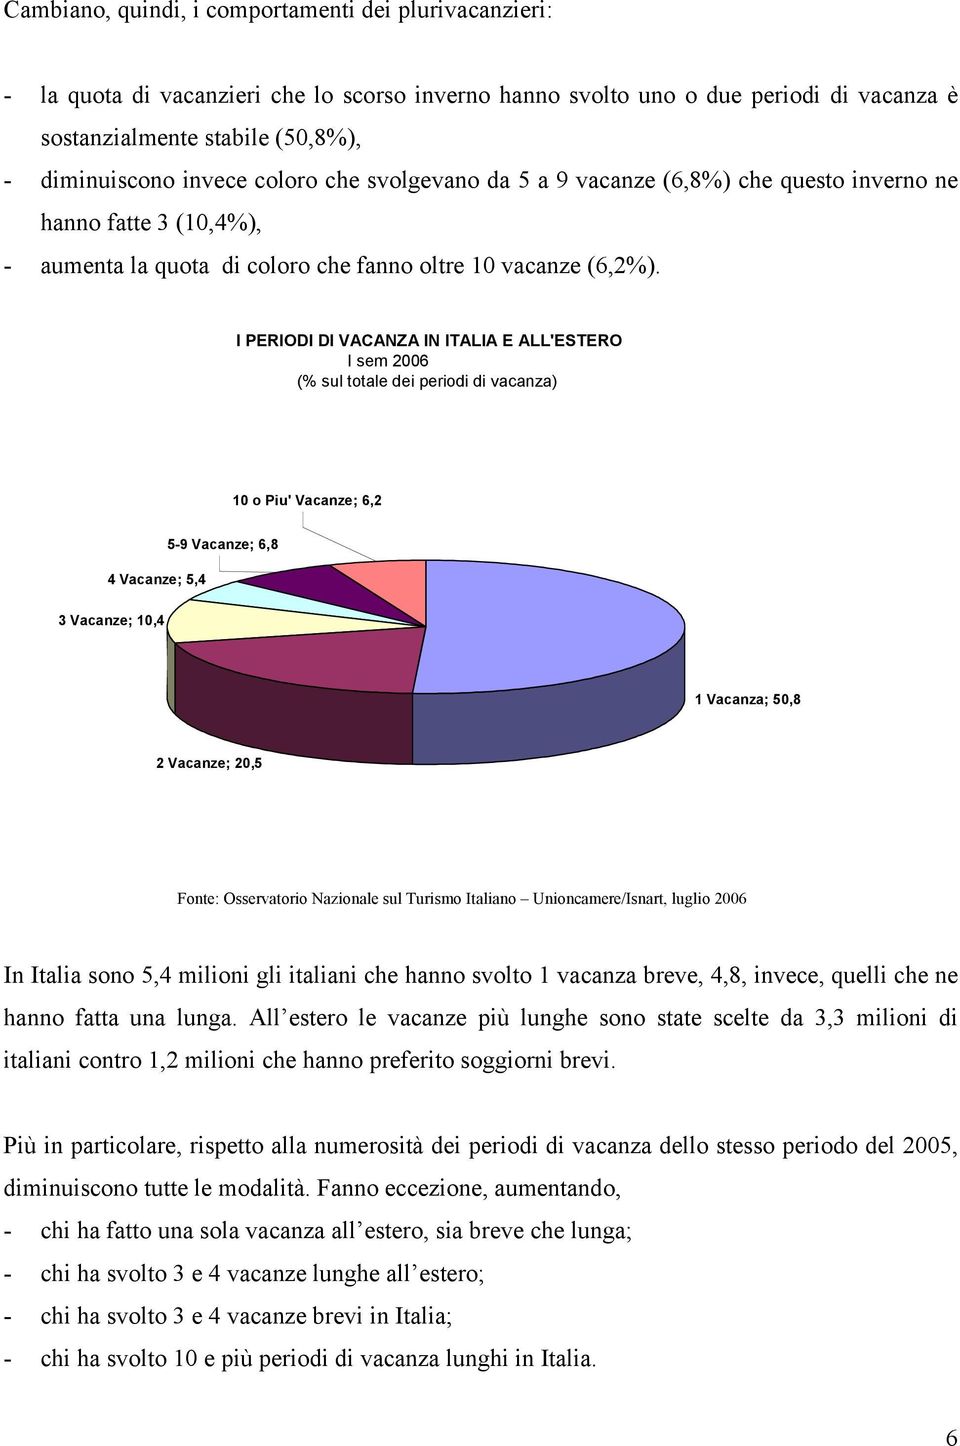 I PERIODI DI VACANZA IN ITALIA E ALL'ESTERO I sem 2006 (% sul totale dei periodi di vacanza) 10 o Piu' Vacanze; 6,2 4 Vacanze; 5,4 5-9 Vacanze; 6,8 3 Vacanze; 10,4 1 Vacanza; 50,8 2 Vacanze; 20,5 In